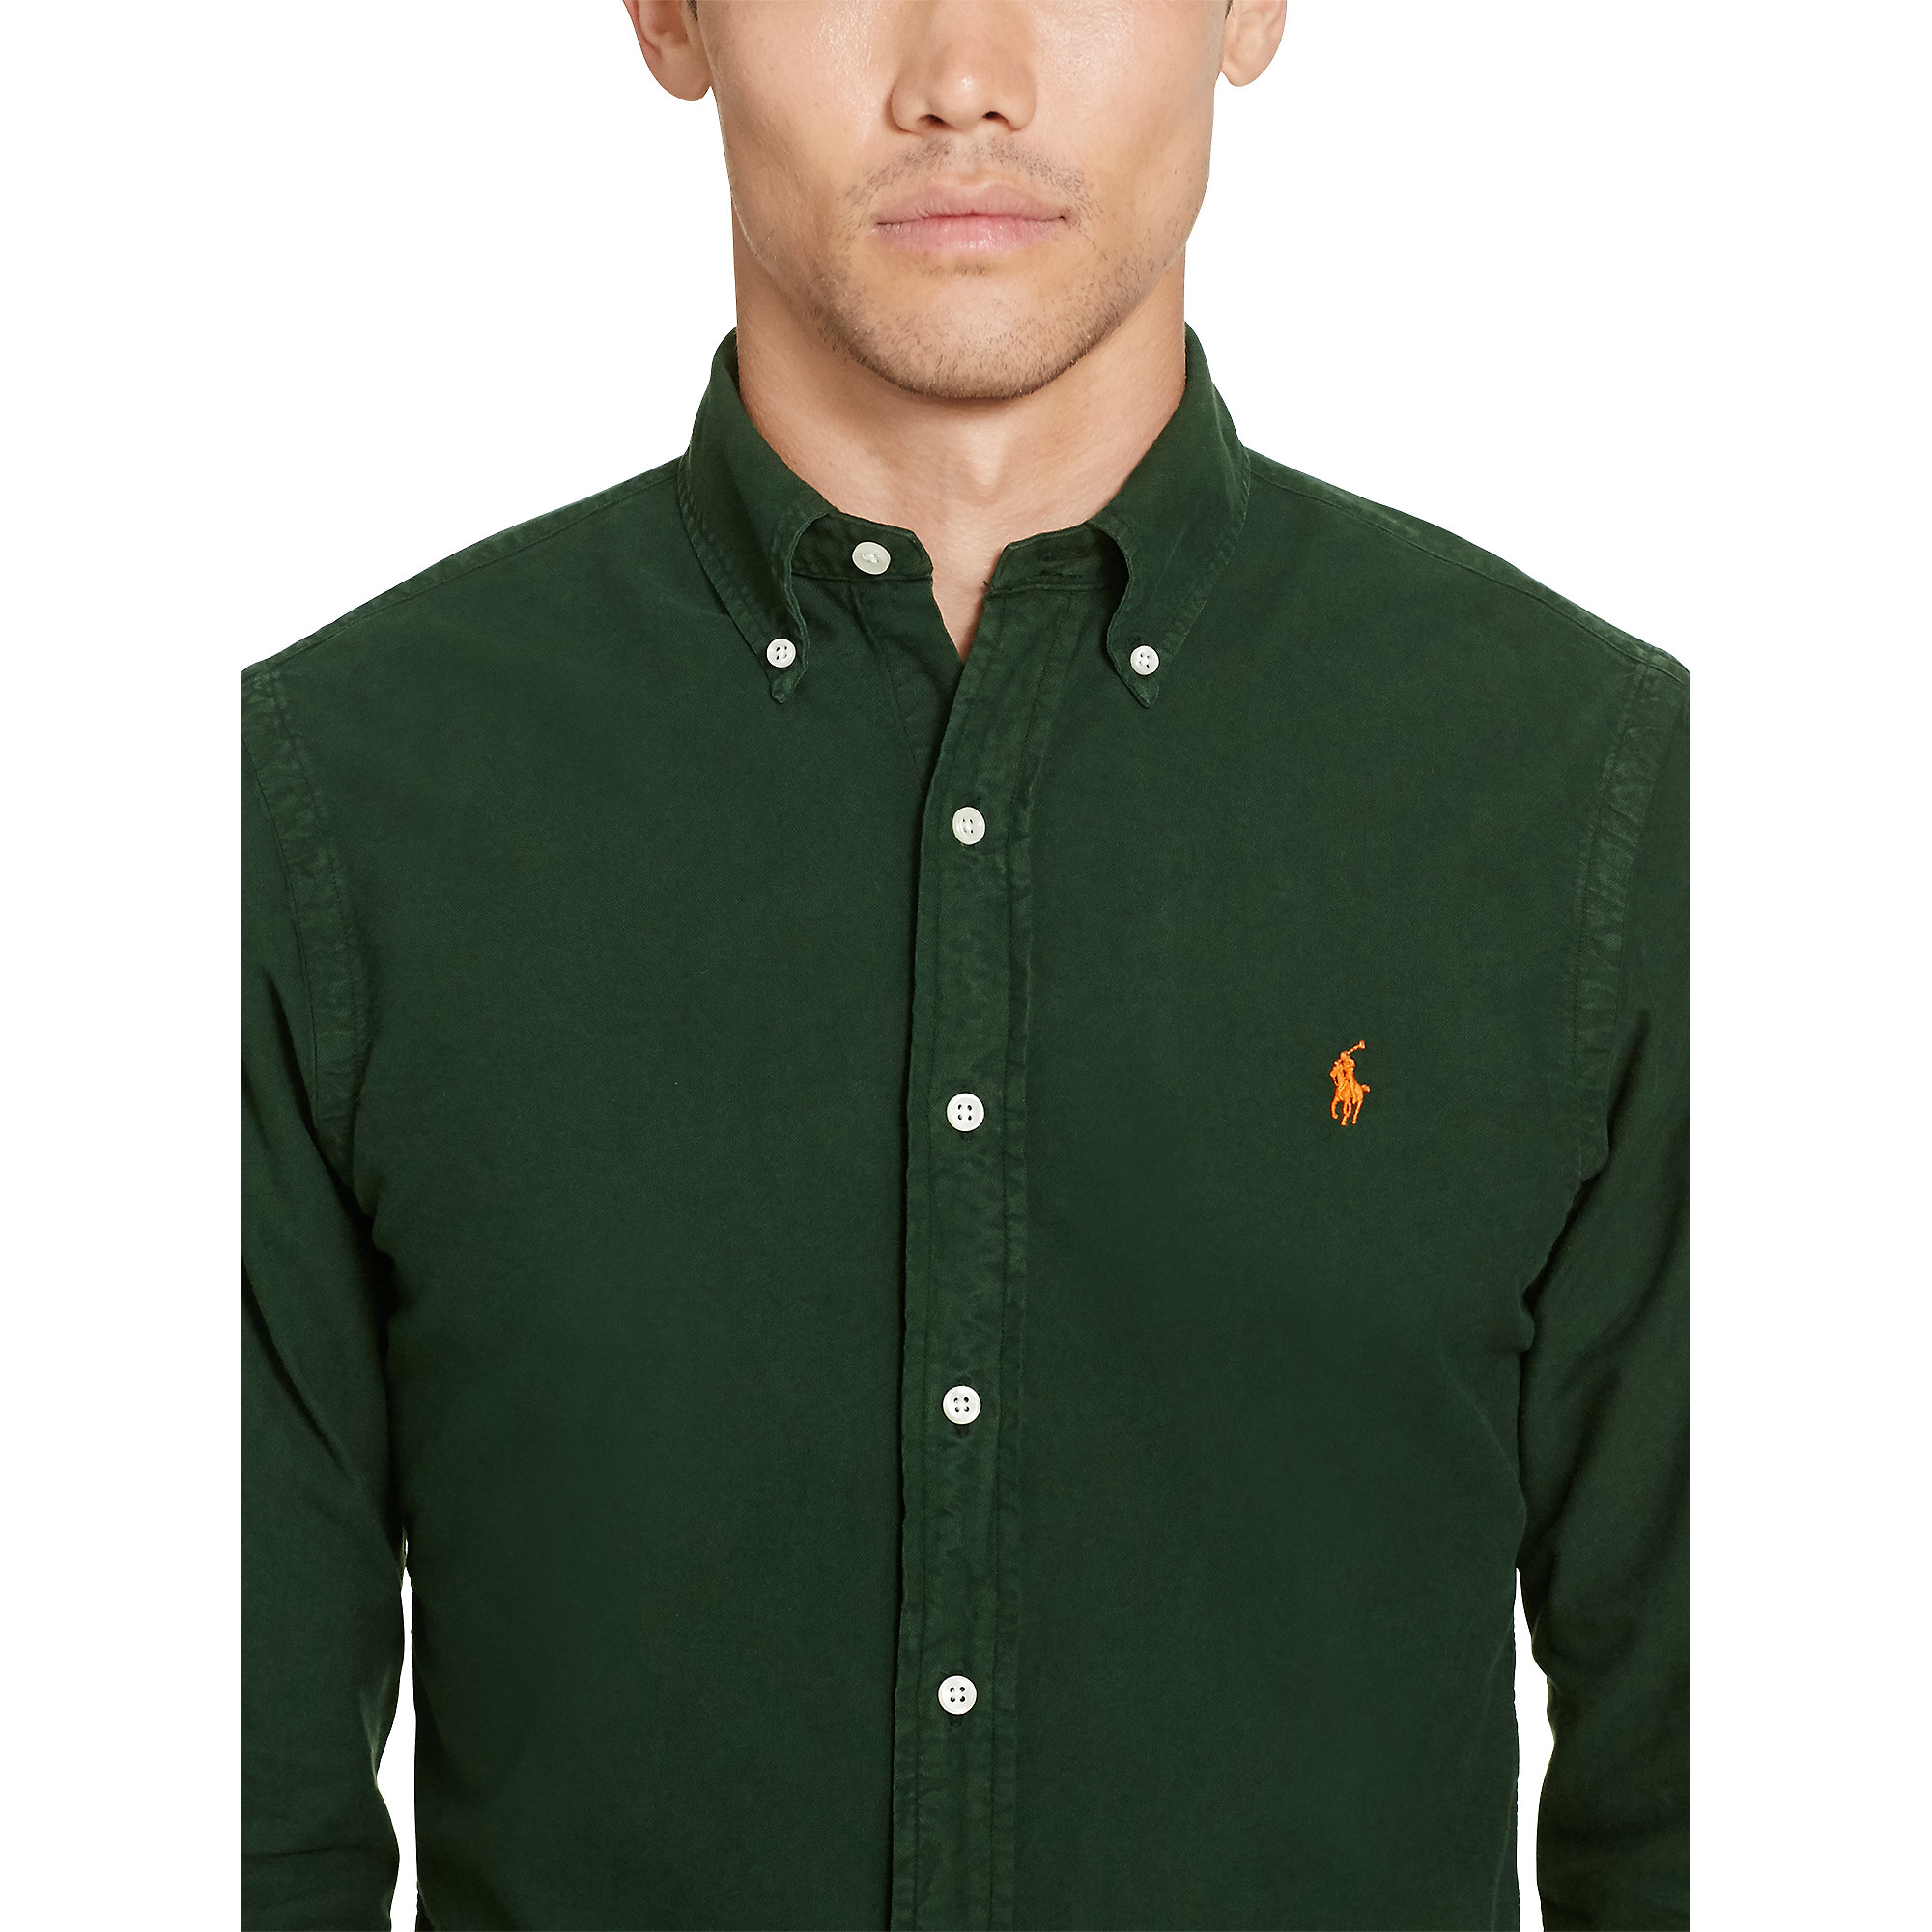 dark green ralph lauren shirt